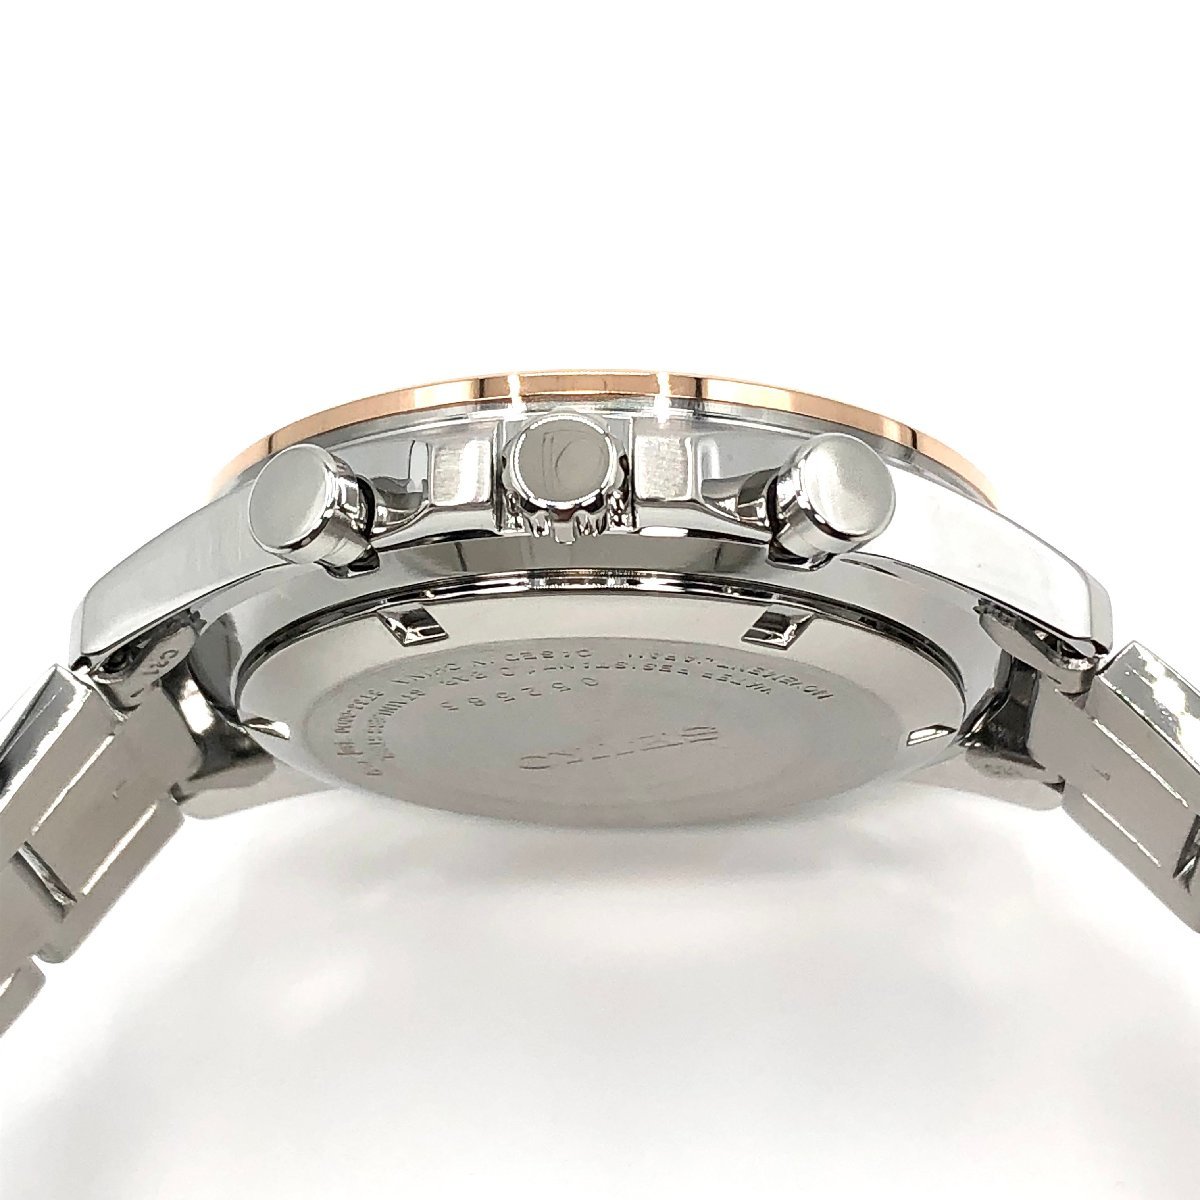 新品正規品『SEIKO SELECTION』セイコー セレクション クロノグラフ 腕時計 メンズ SBTR026【送料無料】_画像4